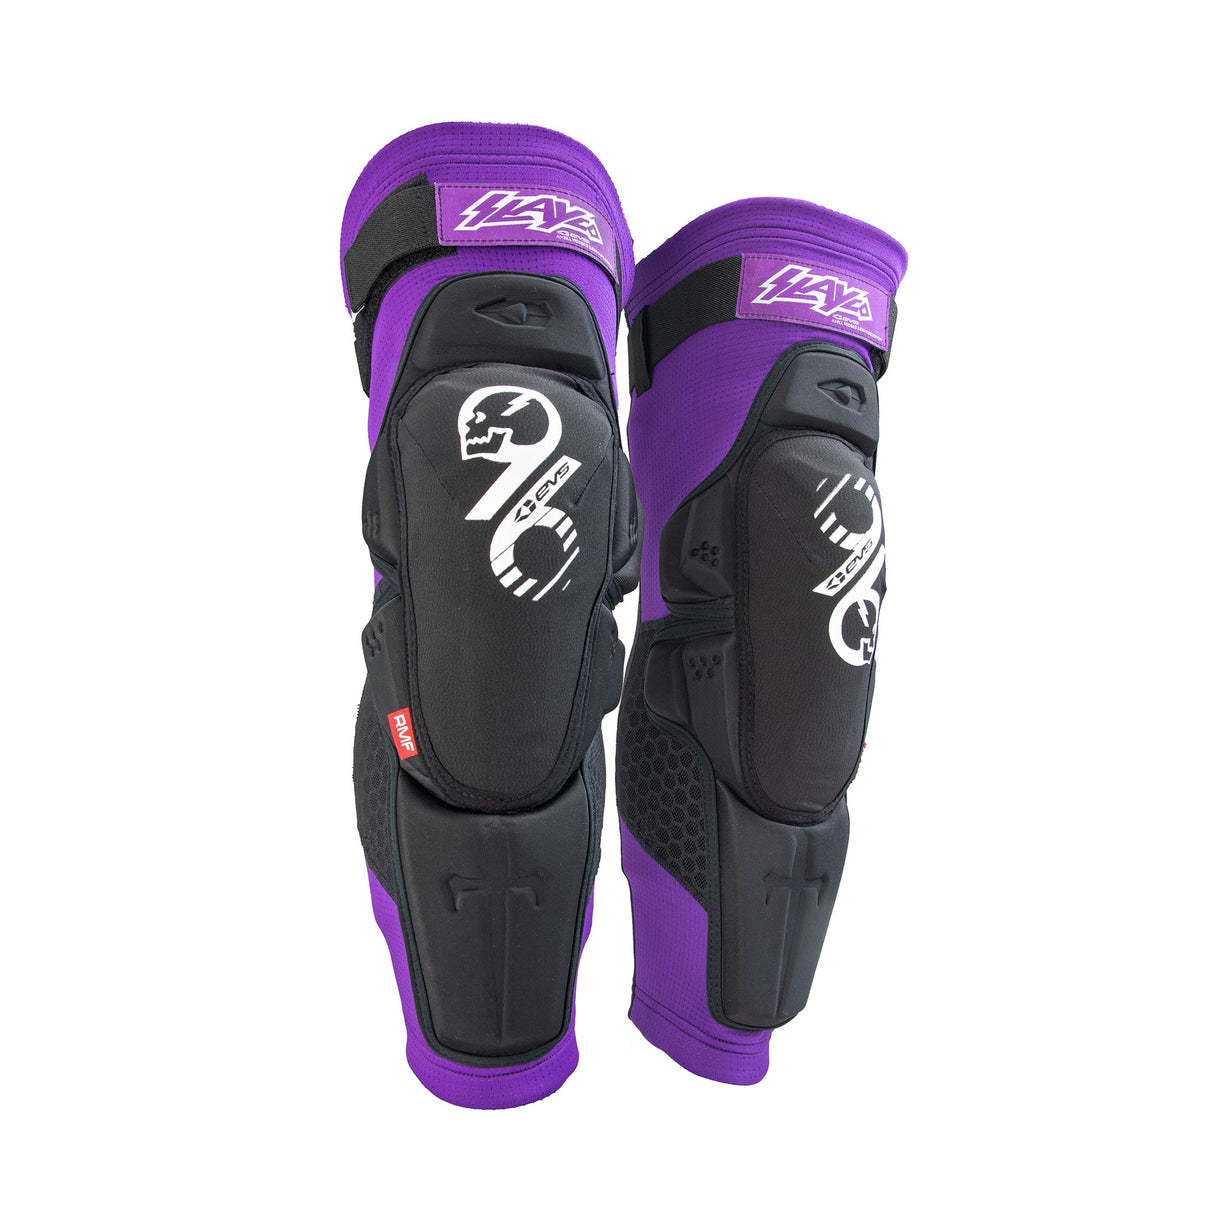 Evs Knee Pad Slayco96 Knee Guard - Purple/Black